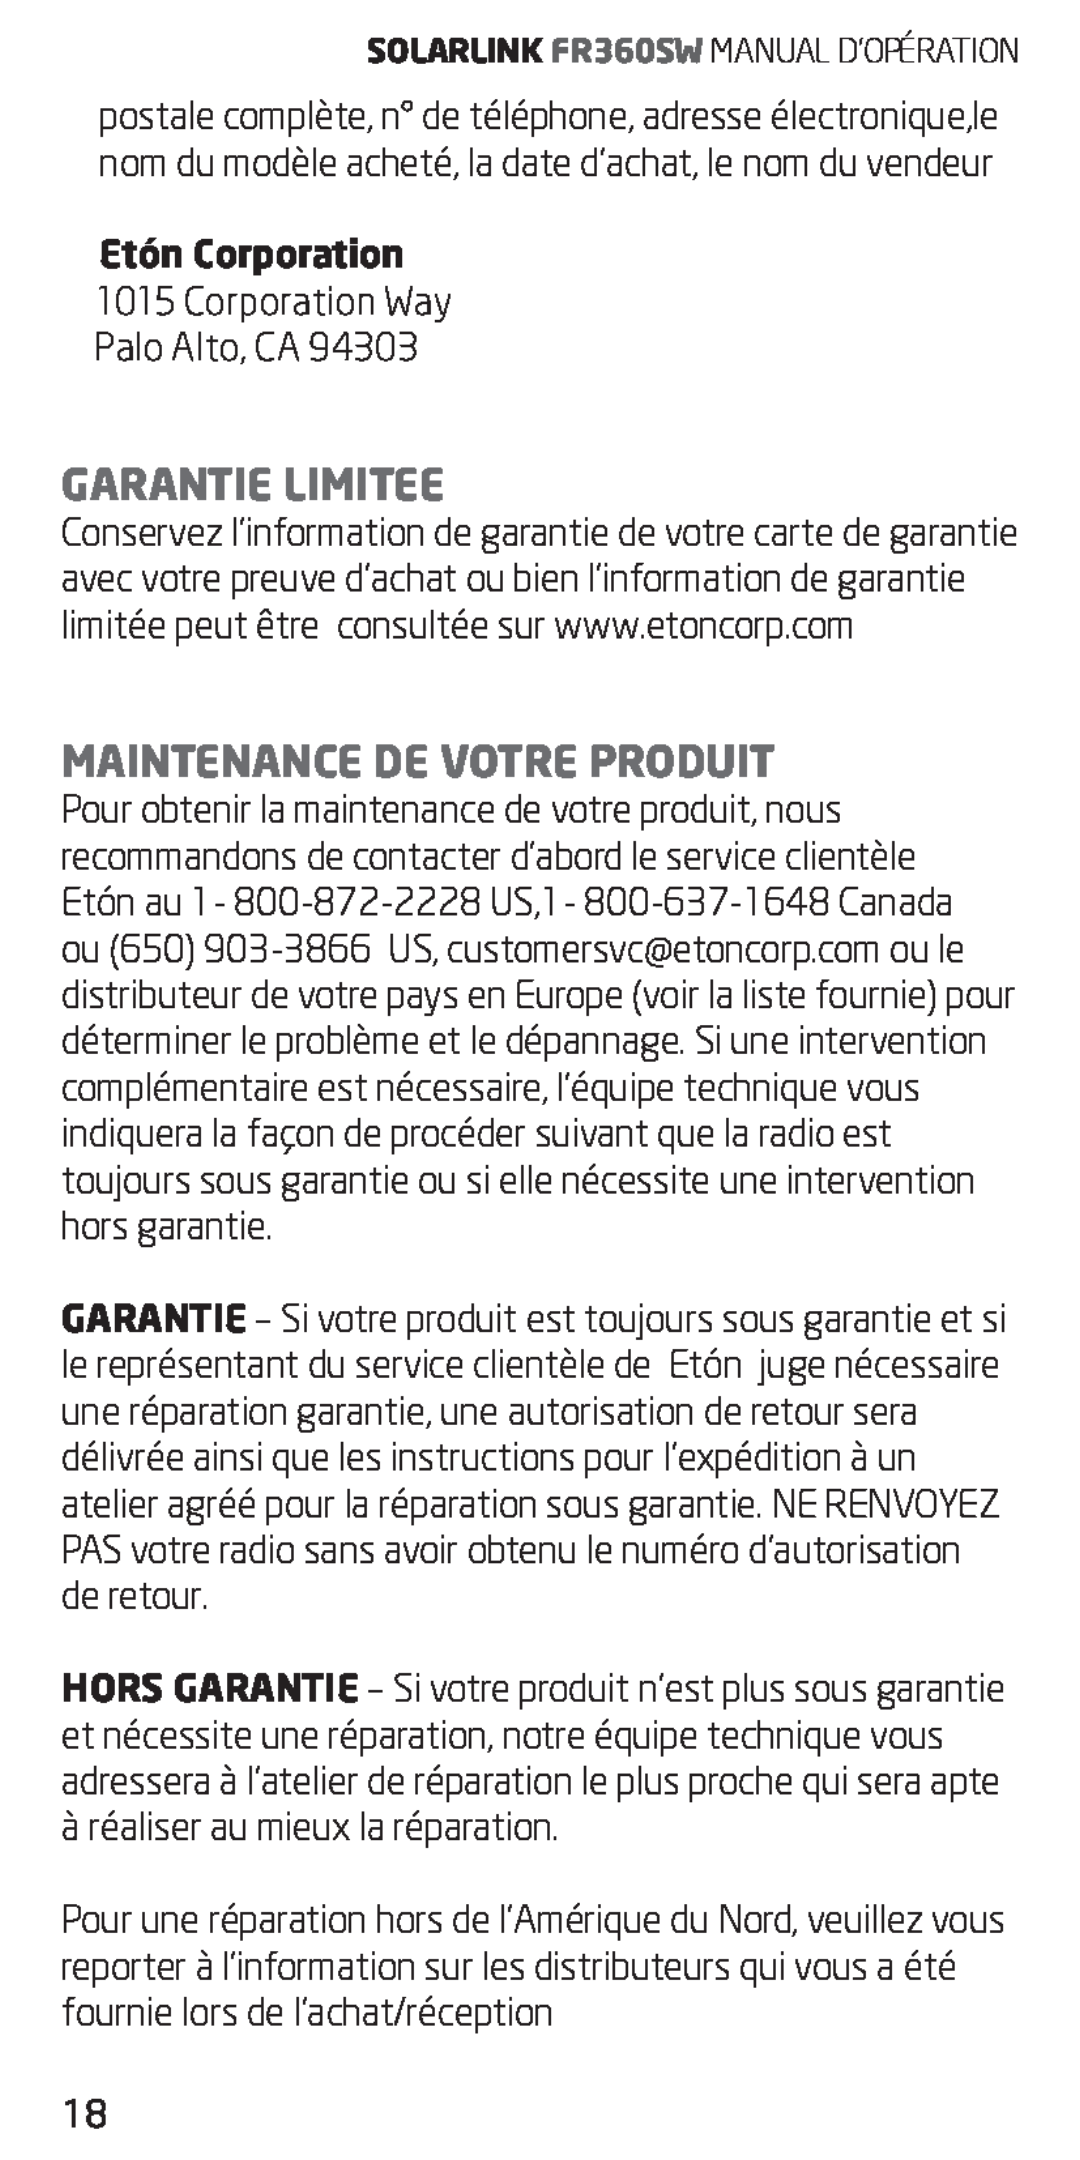 Eton FR360 owner manual Garantie Limitee, Maintenance De Votre Produit, Etón Corporation 